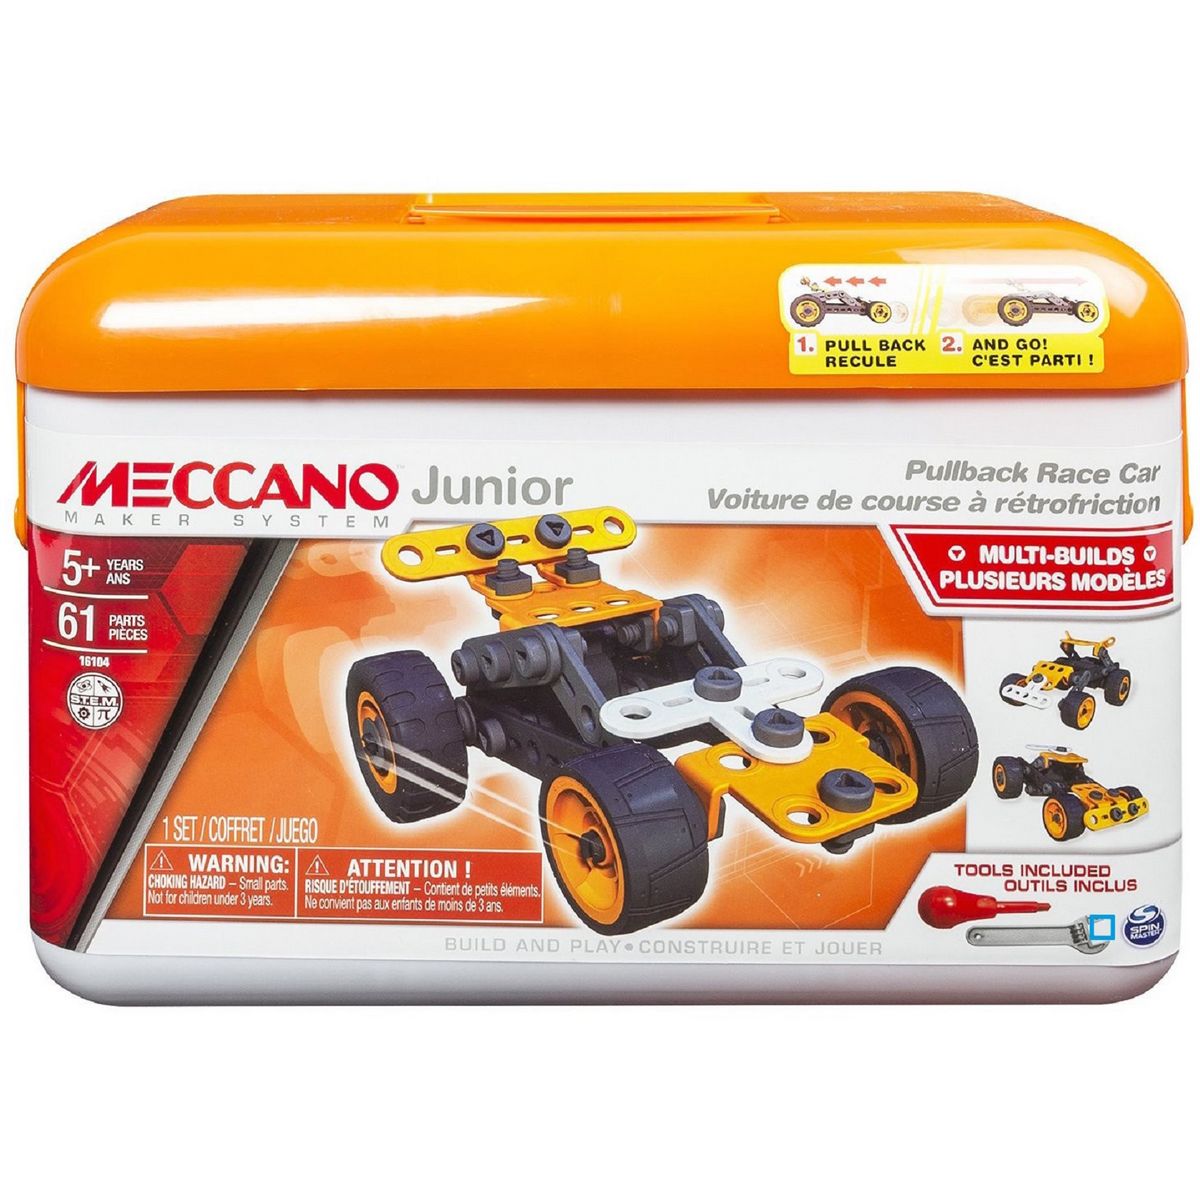 MECCANO Meccano junior mallette voiture rétro friction pas cher 